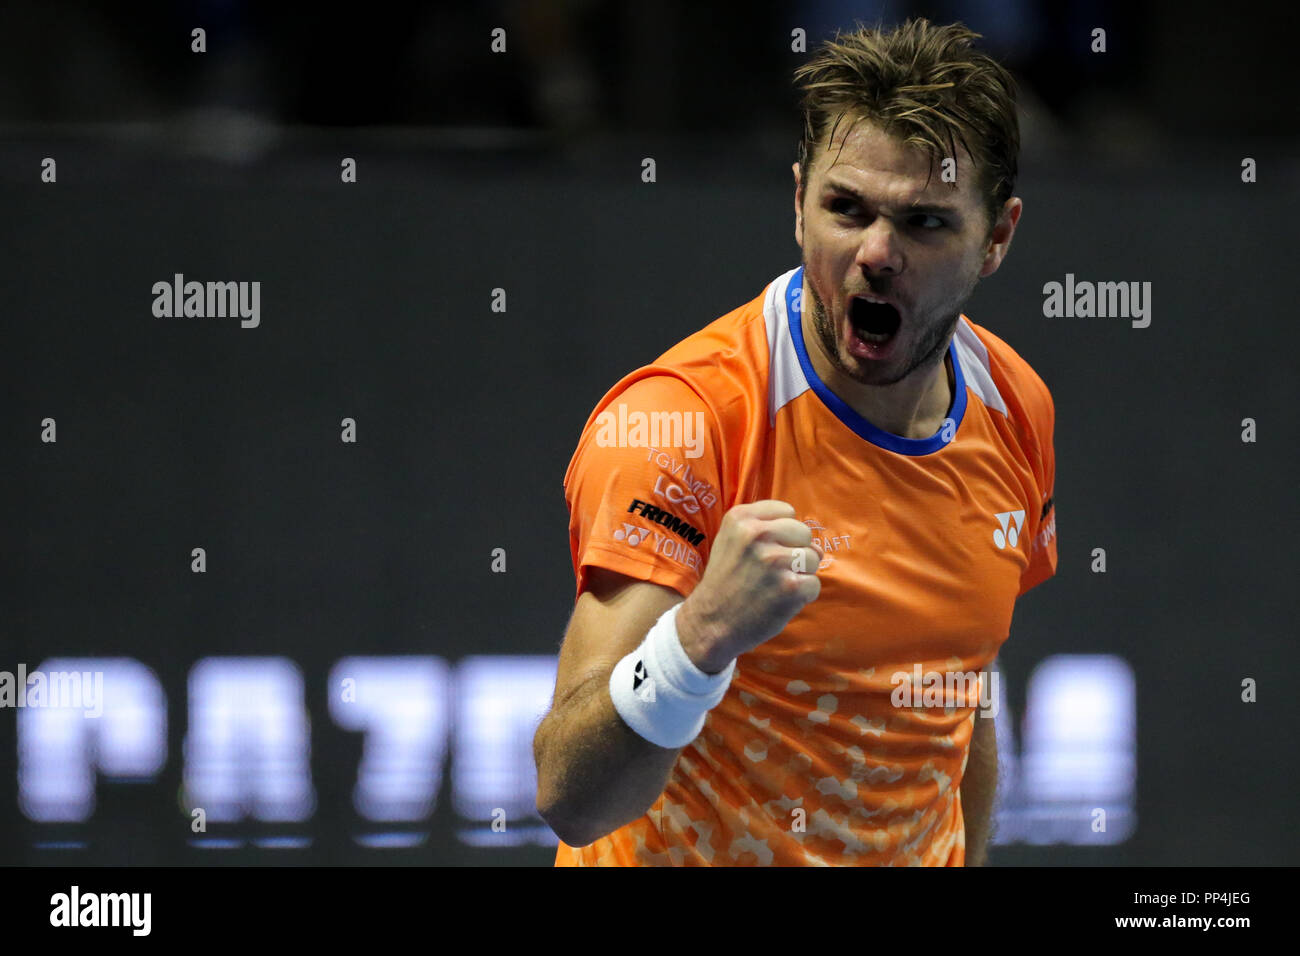 Stan Wawrinka de Suisse réagit lors de l'Open de Saint-Pétersbourg le tournoi de tennis ATP match de demi-finale de Saint-Pétersbourg. Banque D'Images